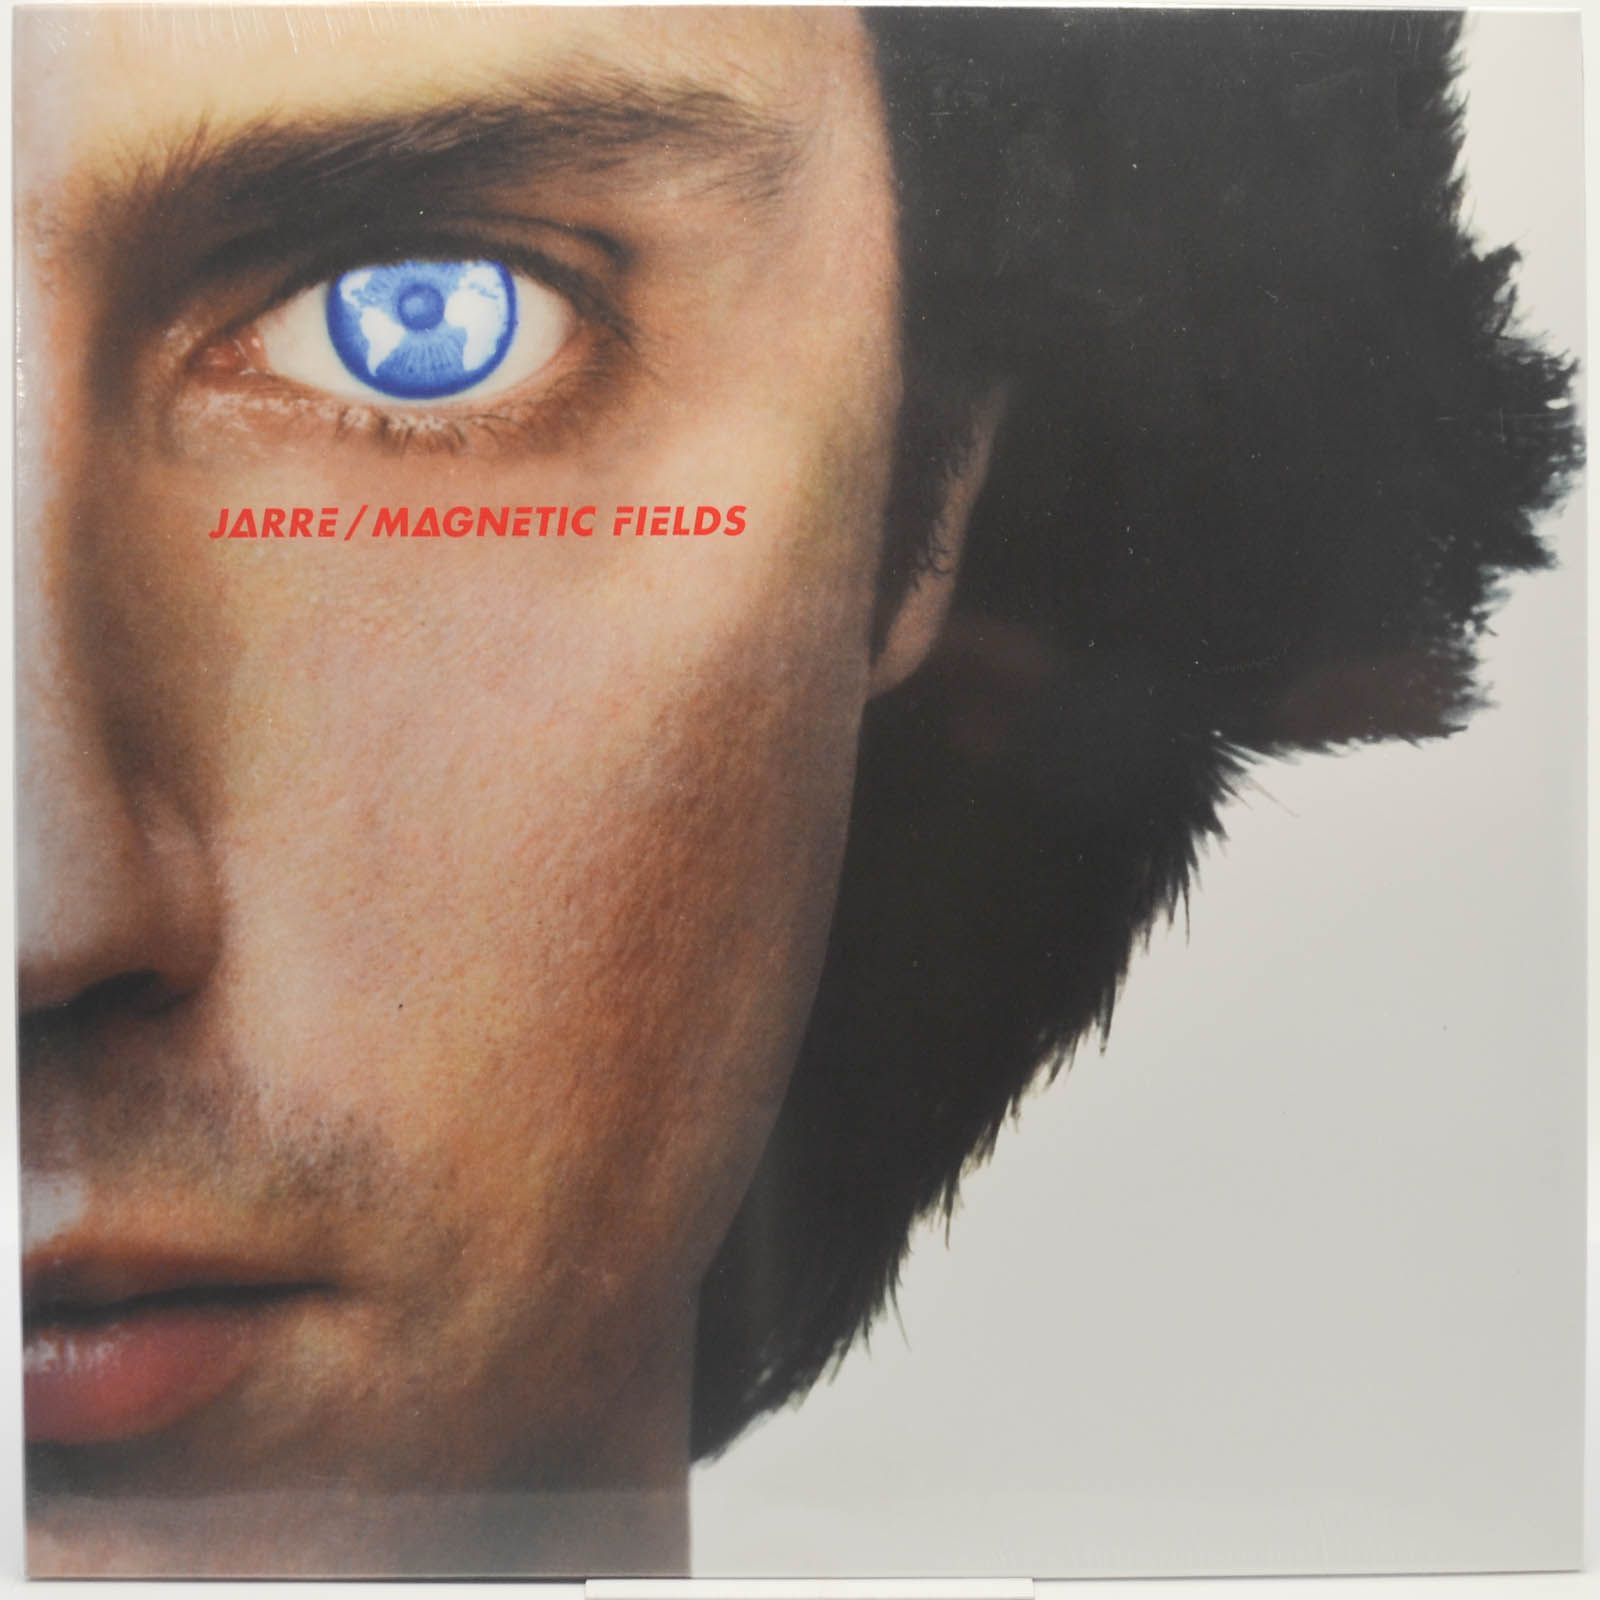 Jean-Michel Jarre — Magnetic Fields = Les Chants Magnétiques, 1981